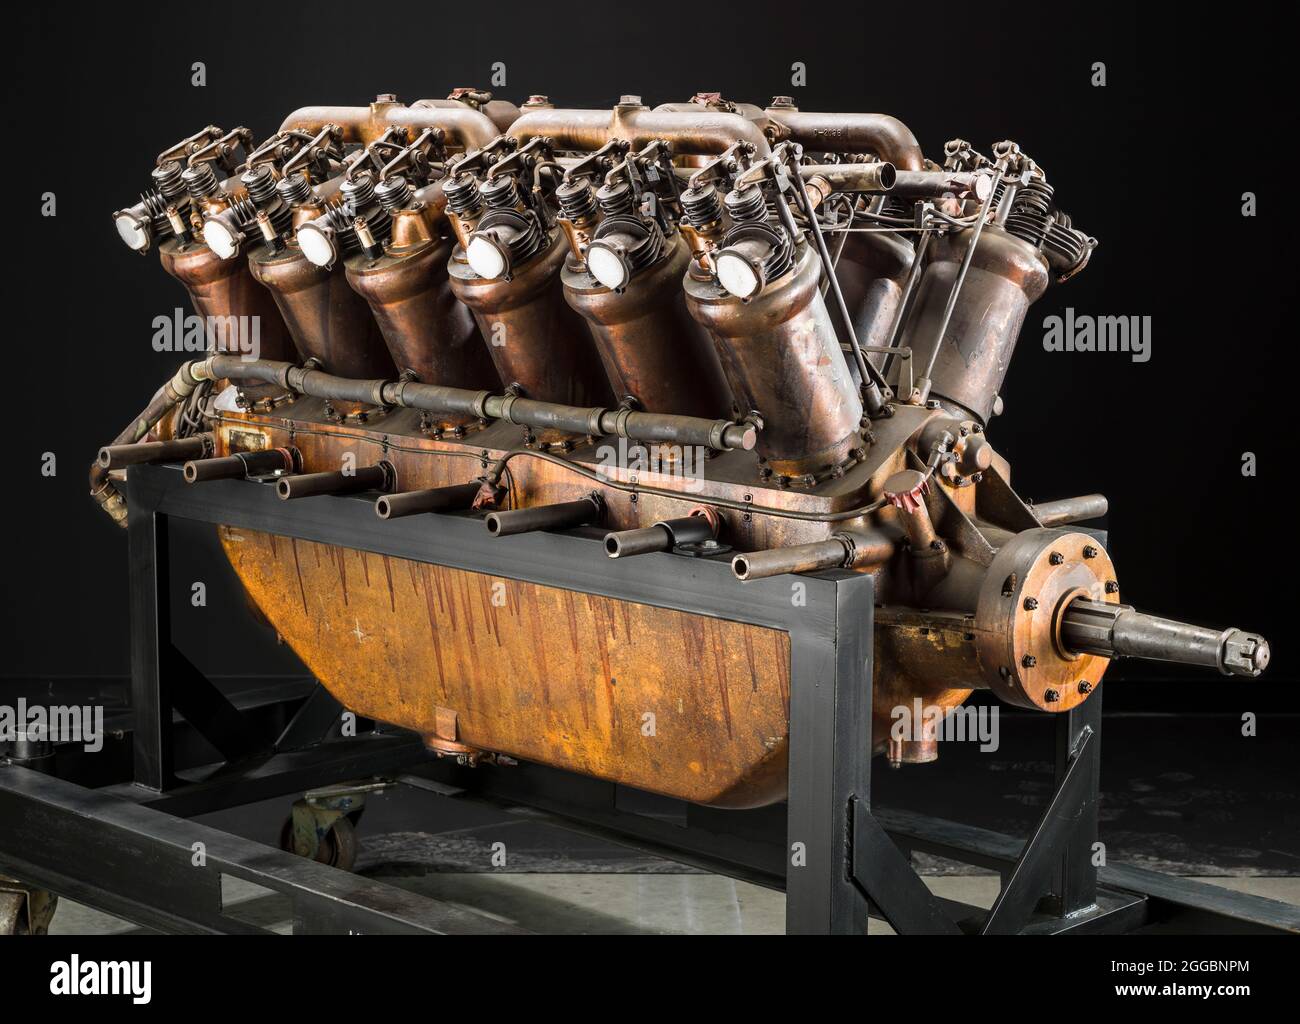 Ende 1915 führte Curtiss eine Designstudie für einen großen Flugzeugmotor von 224 kW (300 ps) oder mehr durch. Ziel war ein Kraftwerk für große Wasserflugzeuge, wie die britischen Naval Air Forces, die bei der Patrouille der Nordsee auf feindliche U-Boote eingesetzt wurden. Die schnellste Möglichkeit, einen solchen Motor zu entwickeln, wurde angenommen, indem der 8-Zylinder Curtiss VX-Motor in eine 12-Zylinder-Version erweitert wurde. Der erste Curtiss-Motor mit 12 Zylindern wurde als V-4 bezeichnet. Obwohl dieser Motor schließlich etwa 298 kW (400 ps) entwickelte, wurde er nicht produziert, weil ein erfolgreicher Rivale, der Liberty, leichter und leichter war Stockfoto